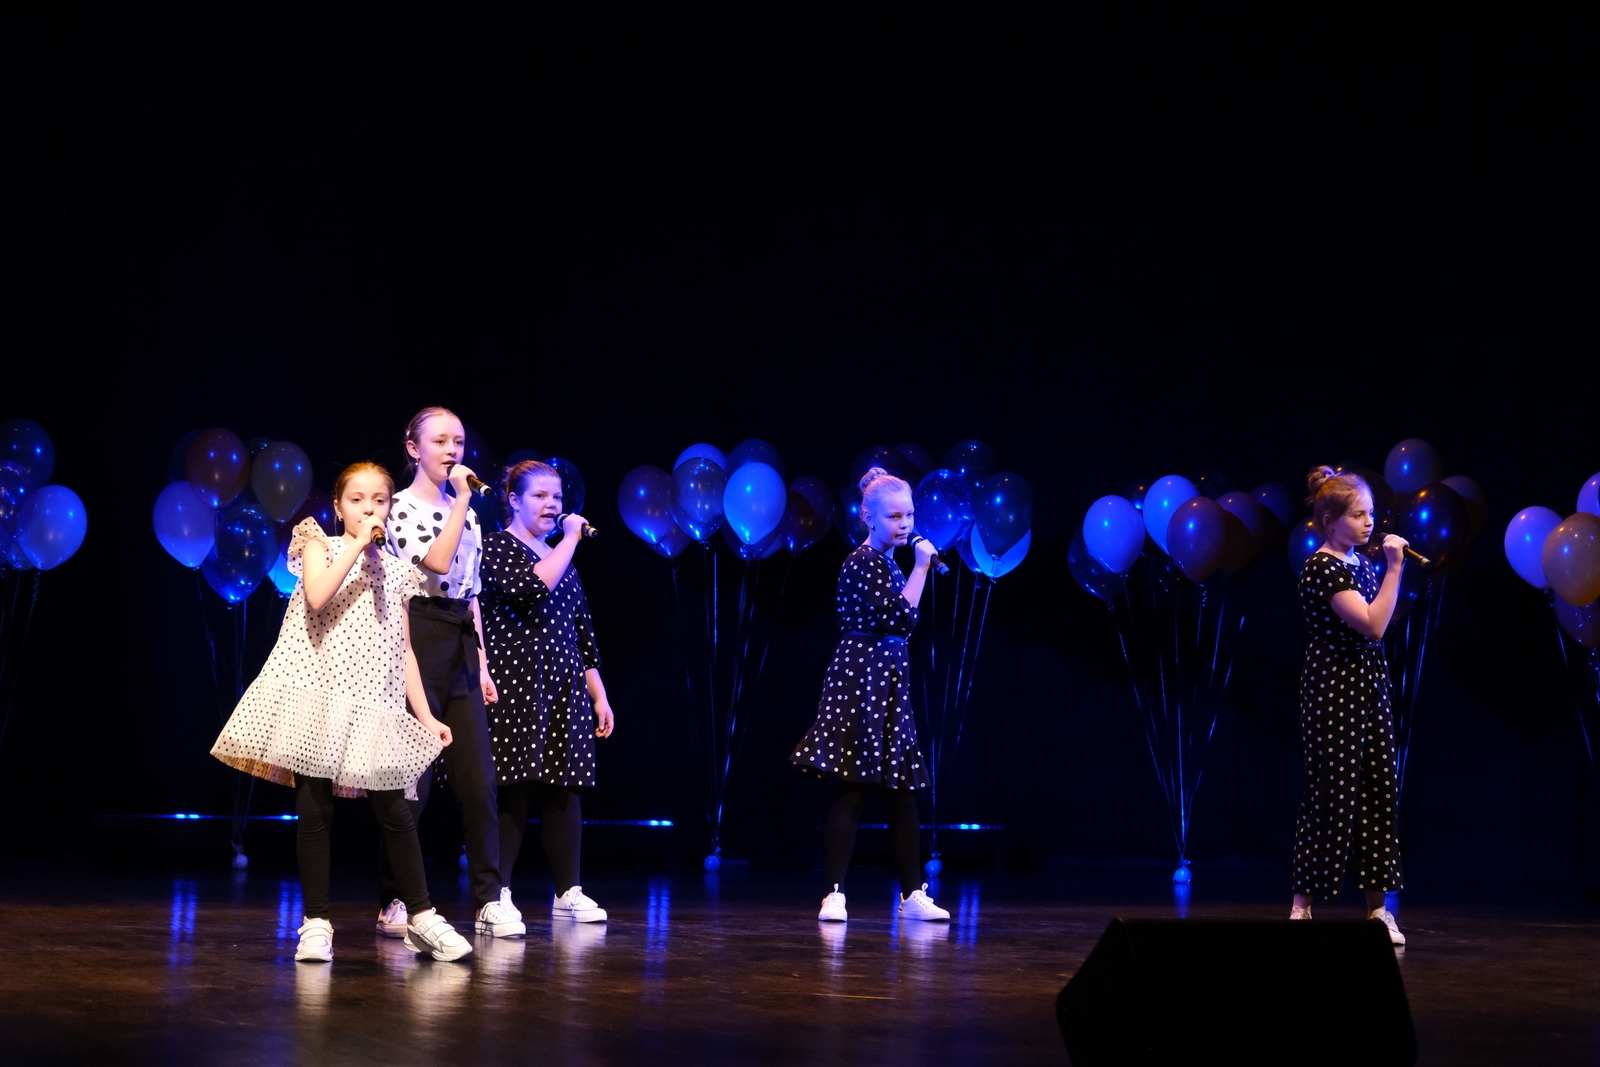 Bērnu vokālā studija SVILPASTES kuplā dziedātāju pulkā aizvadījusi sadraudzības koncertu